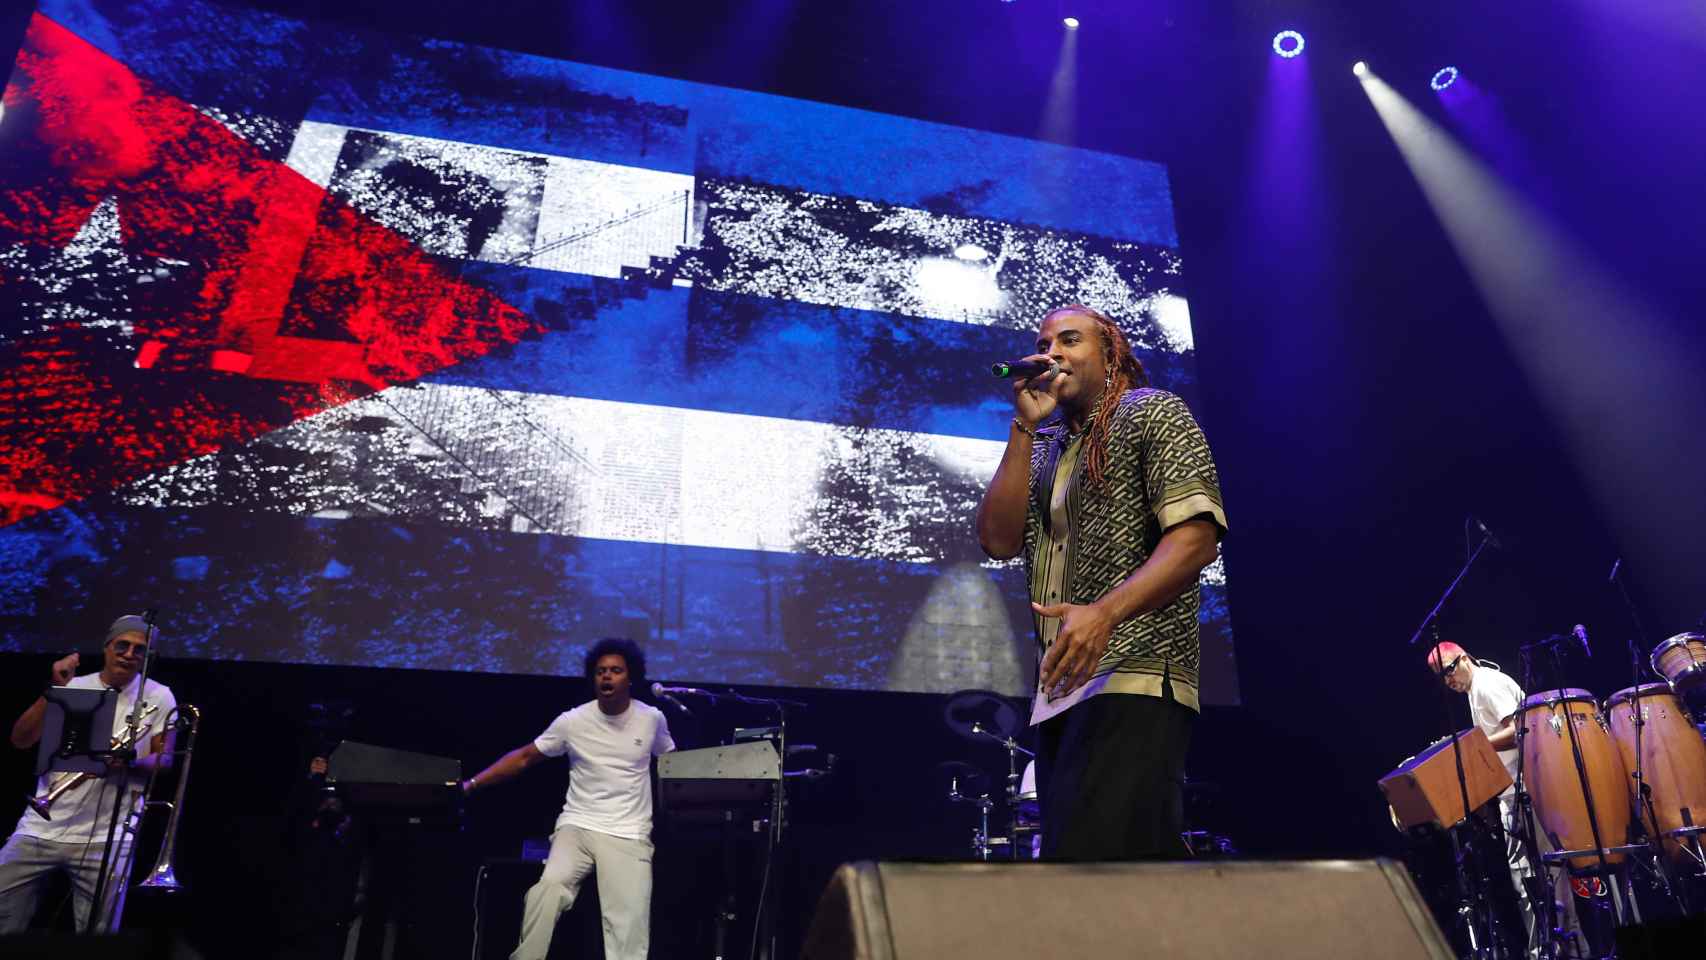 El rapero Yotuel en un concierto en Madrid. Al fondo, la bandera de Cuba.